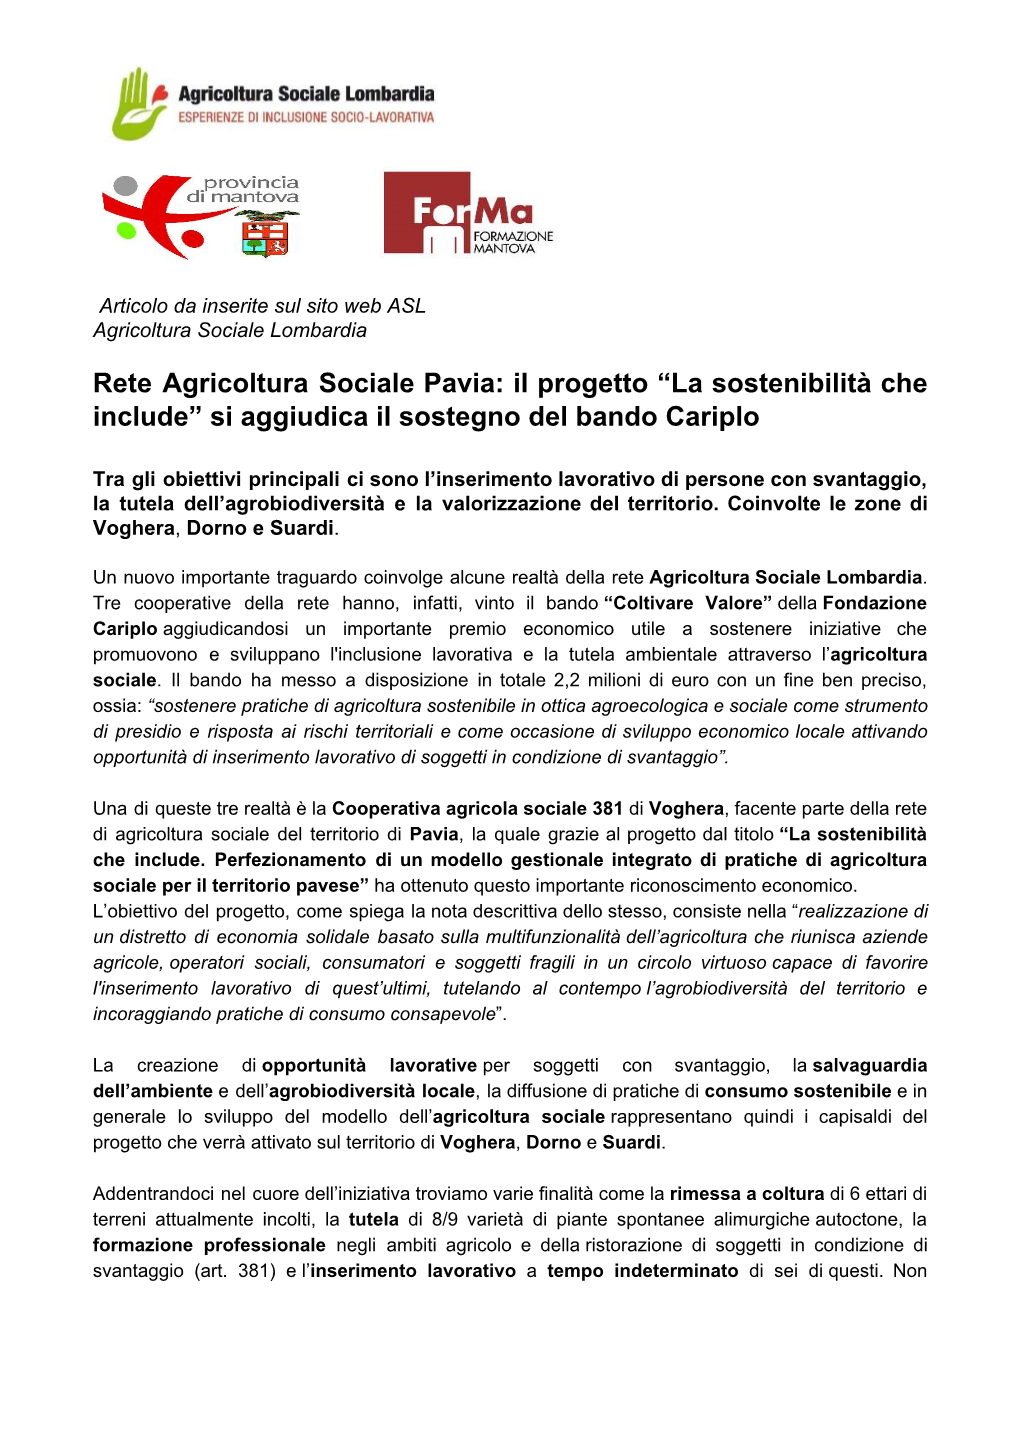 Rete Agricoltura Sociale Pavia: Il Progetto “La Sostenibilità Che Include” Si Aggiudica Il Sostegno Del Bando Cariplo